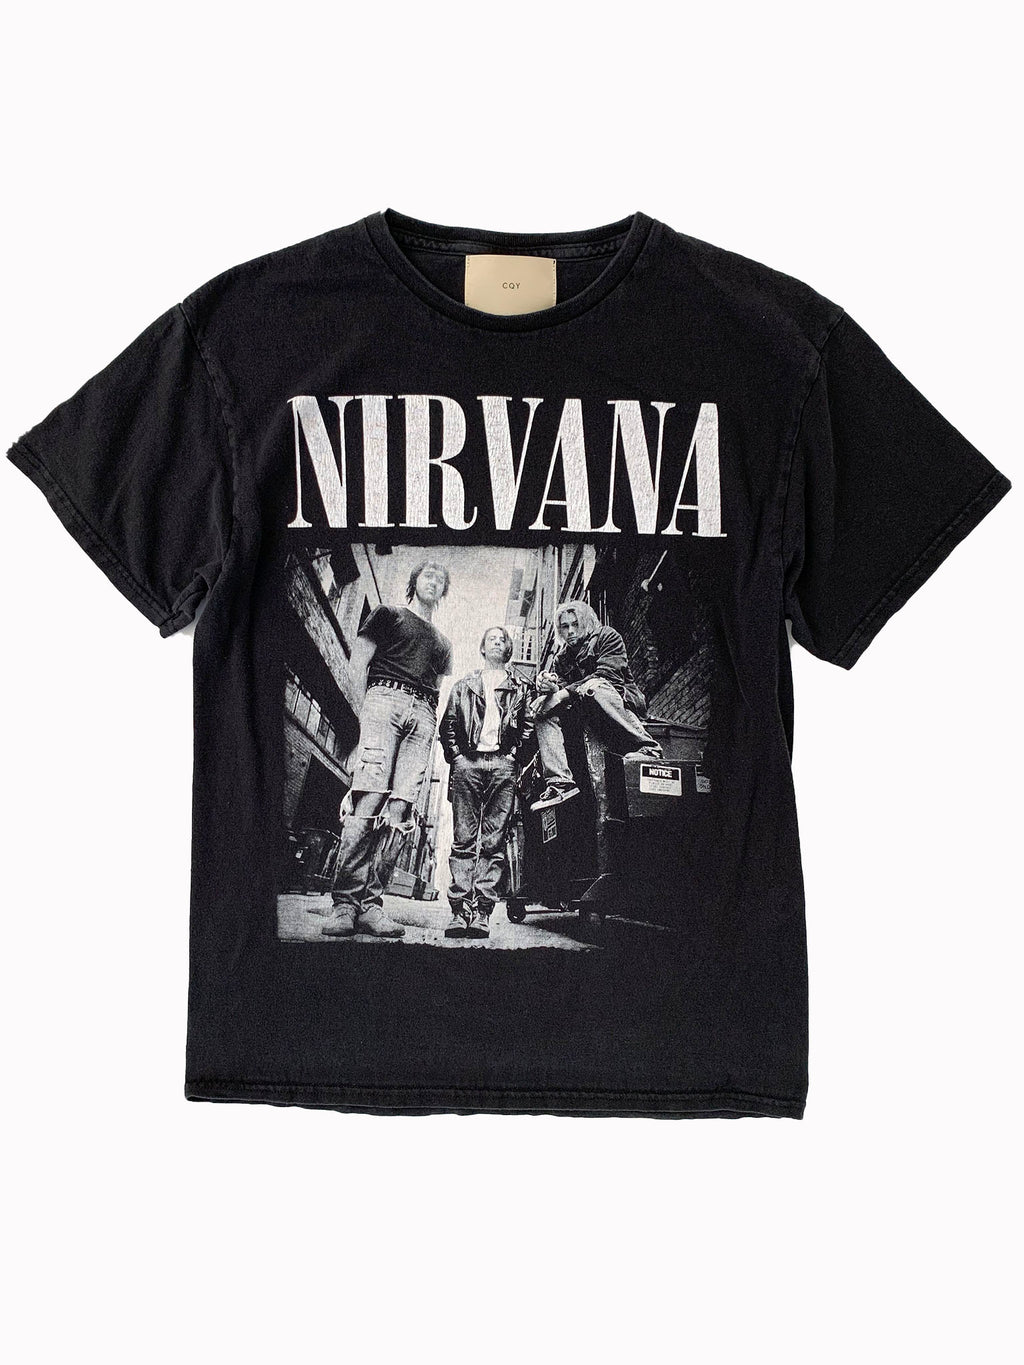 nirvana shirt vintage